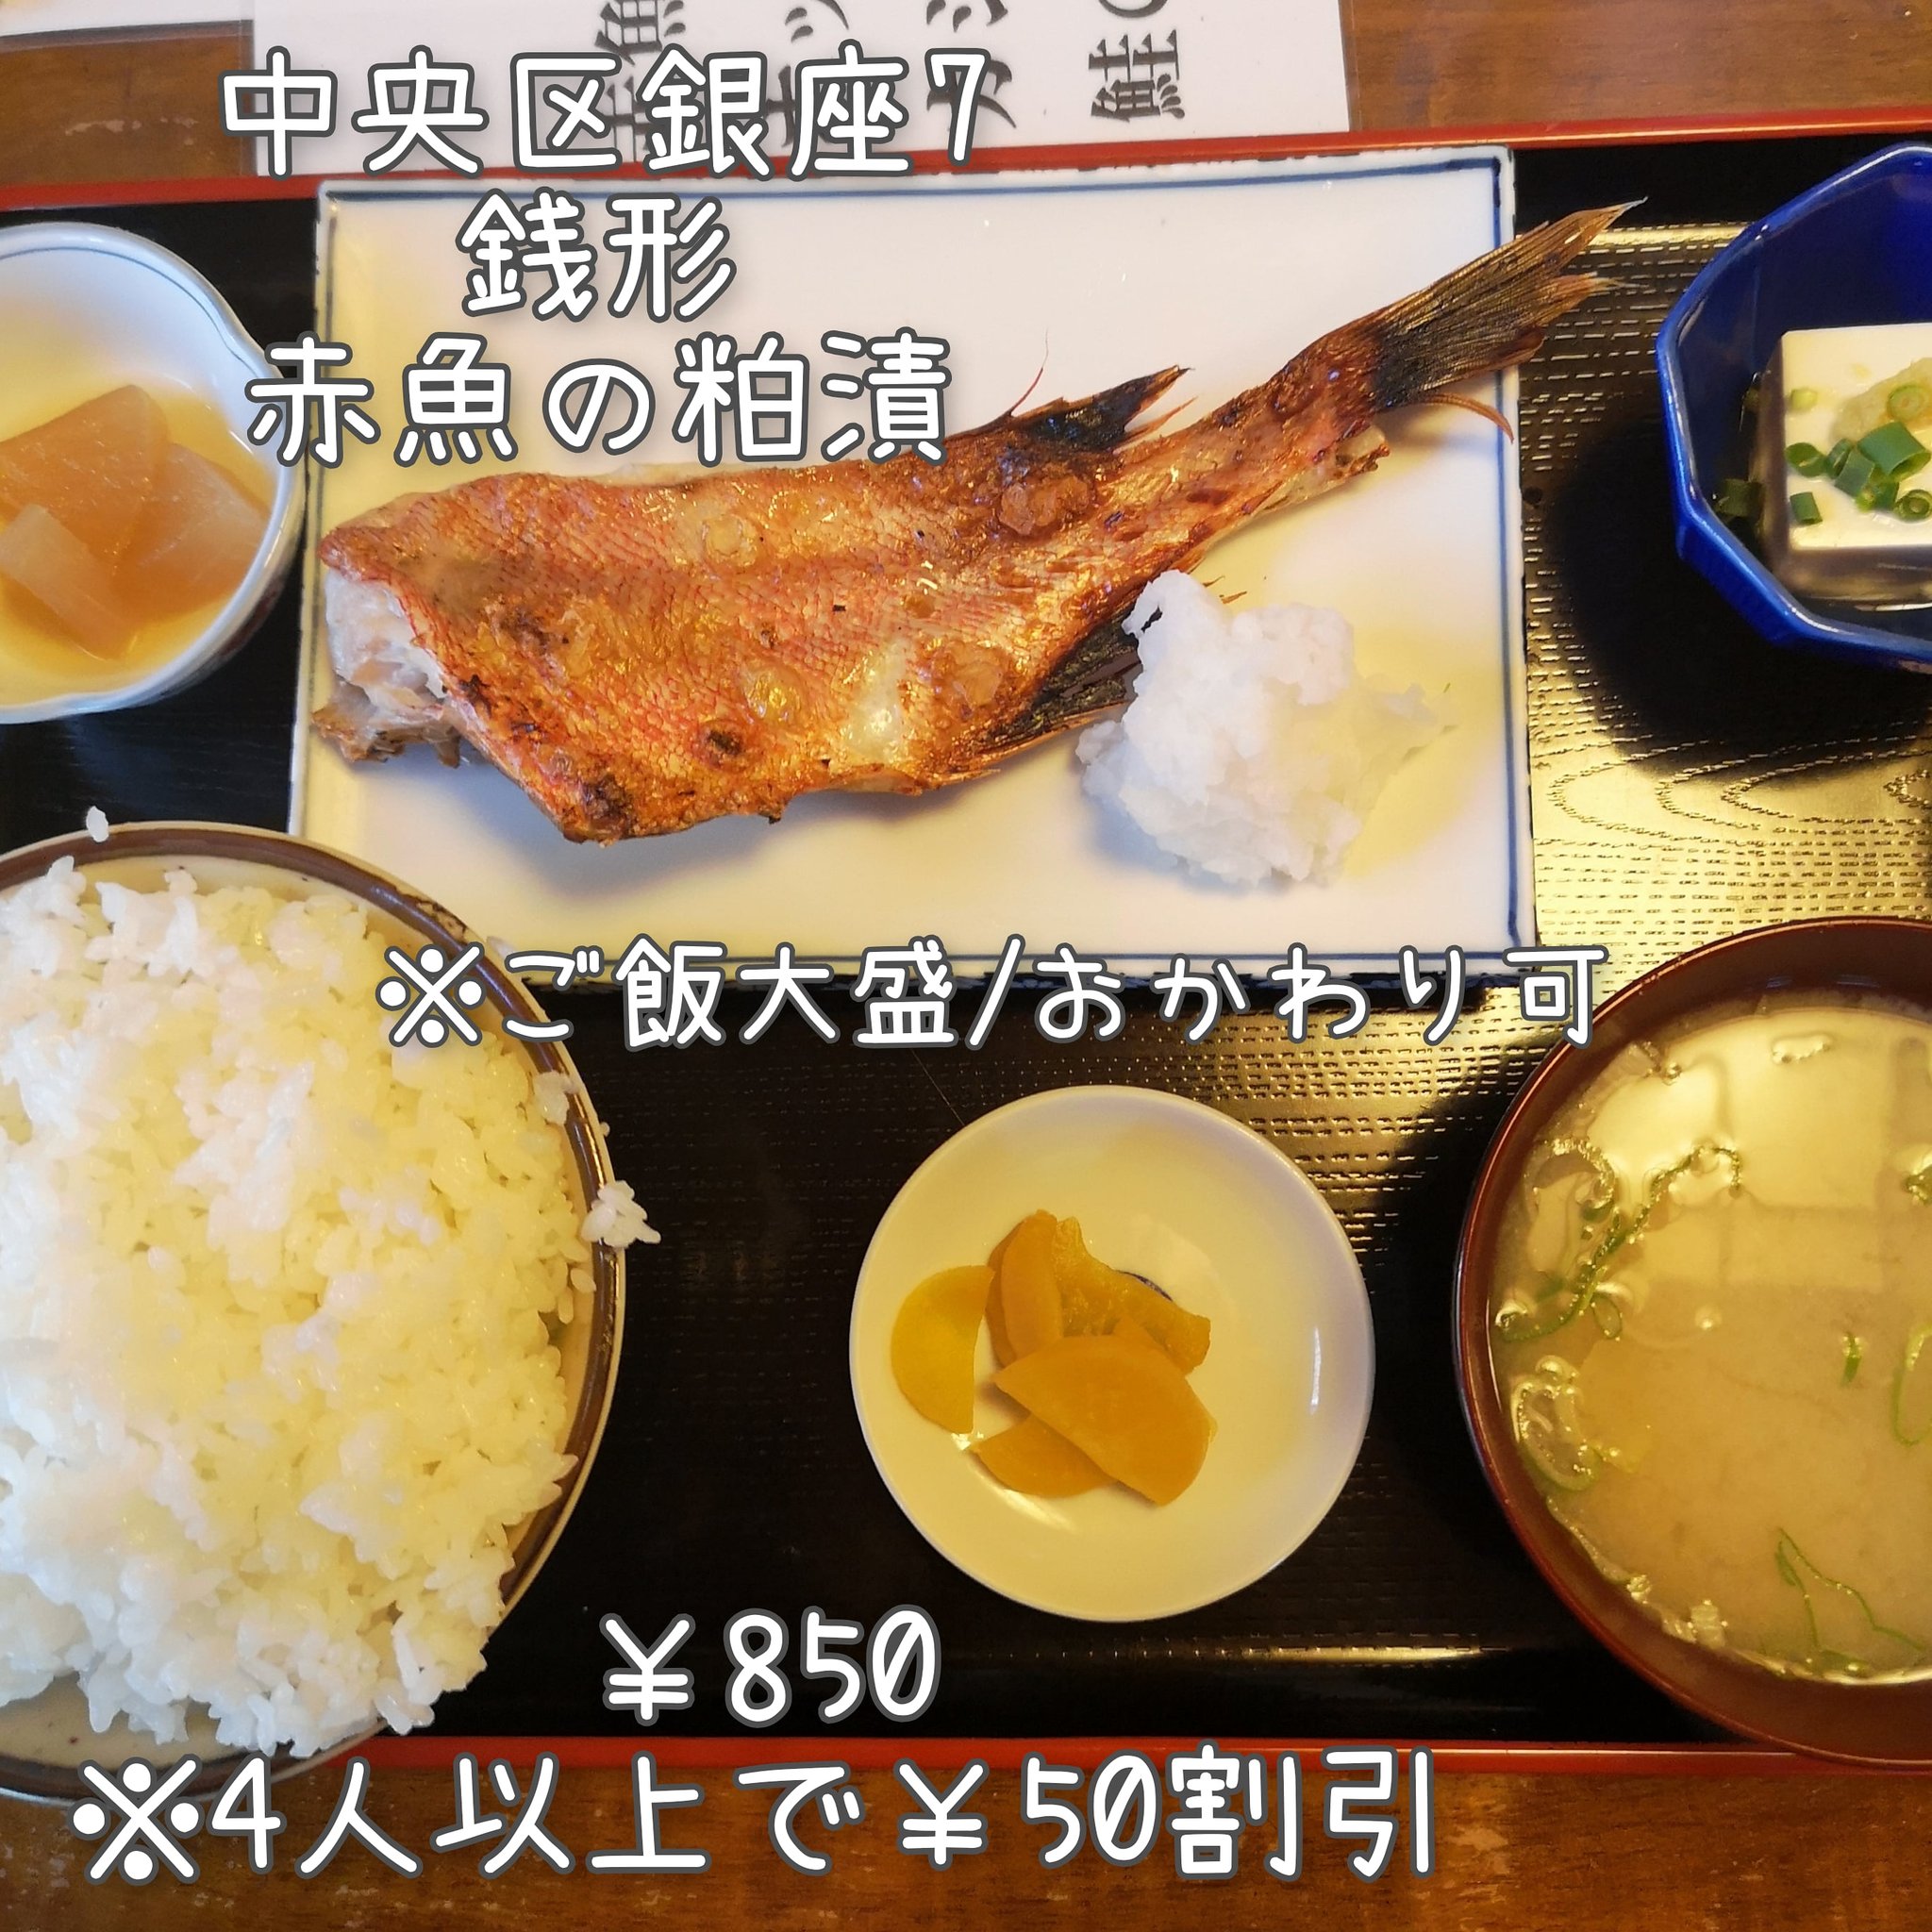 赤魚定食 - Twitter Search / Twitter